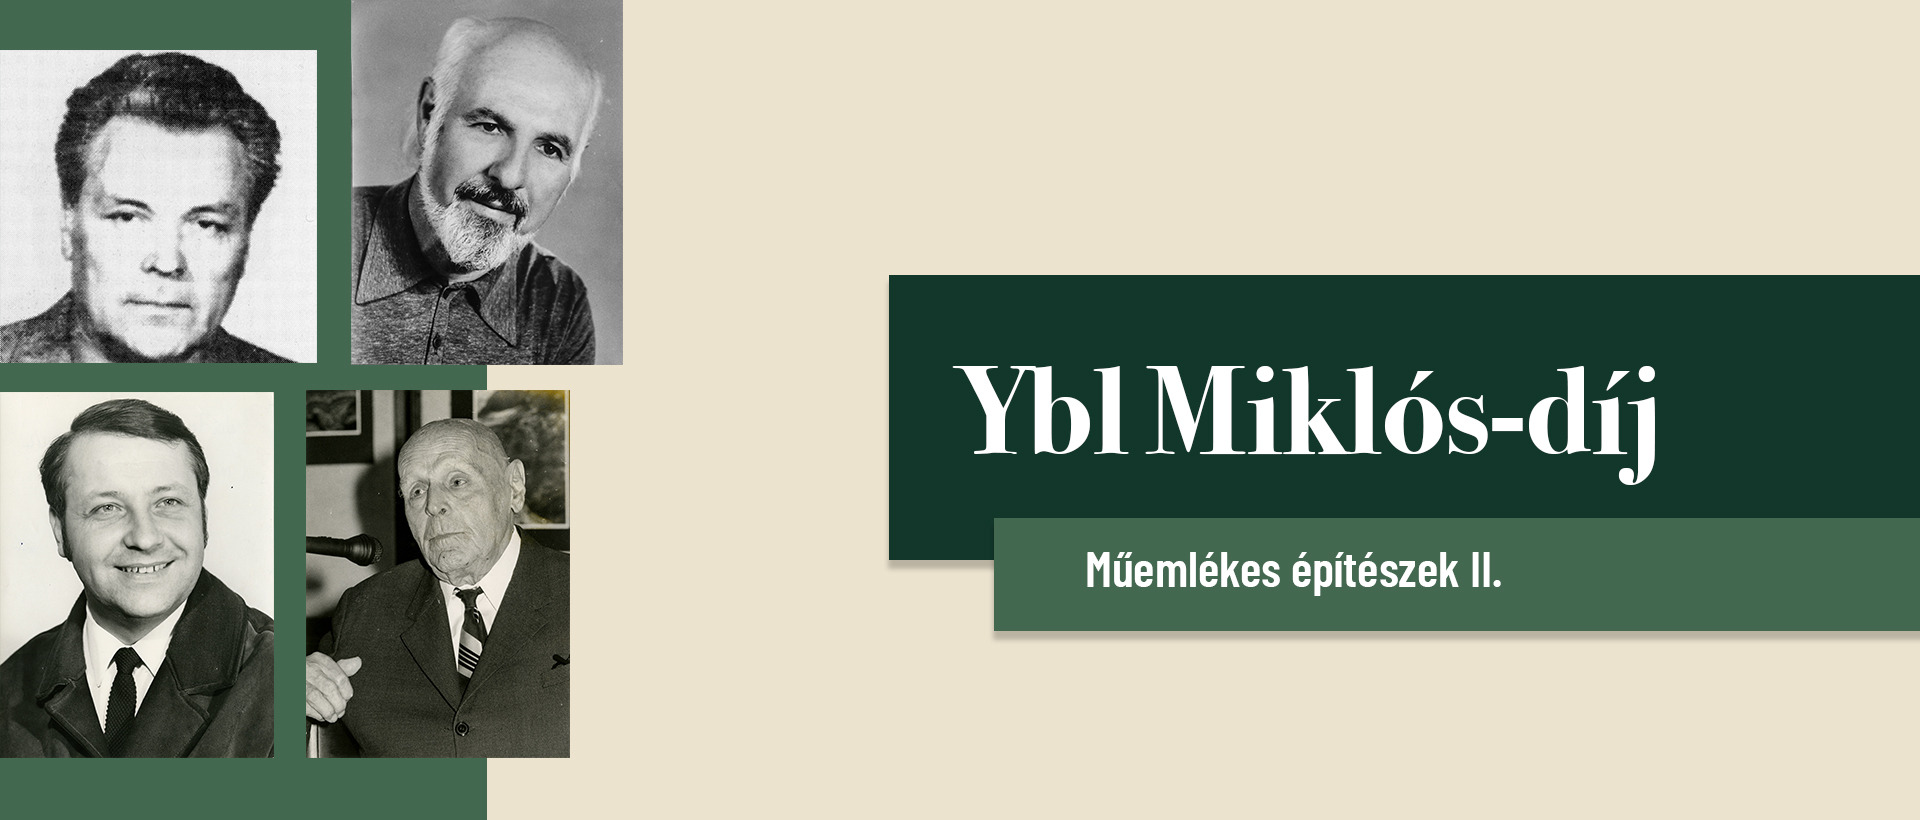 Hetven éve alapították az Ybl Miklós-díjat II.